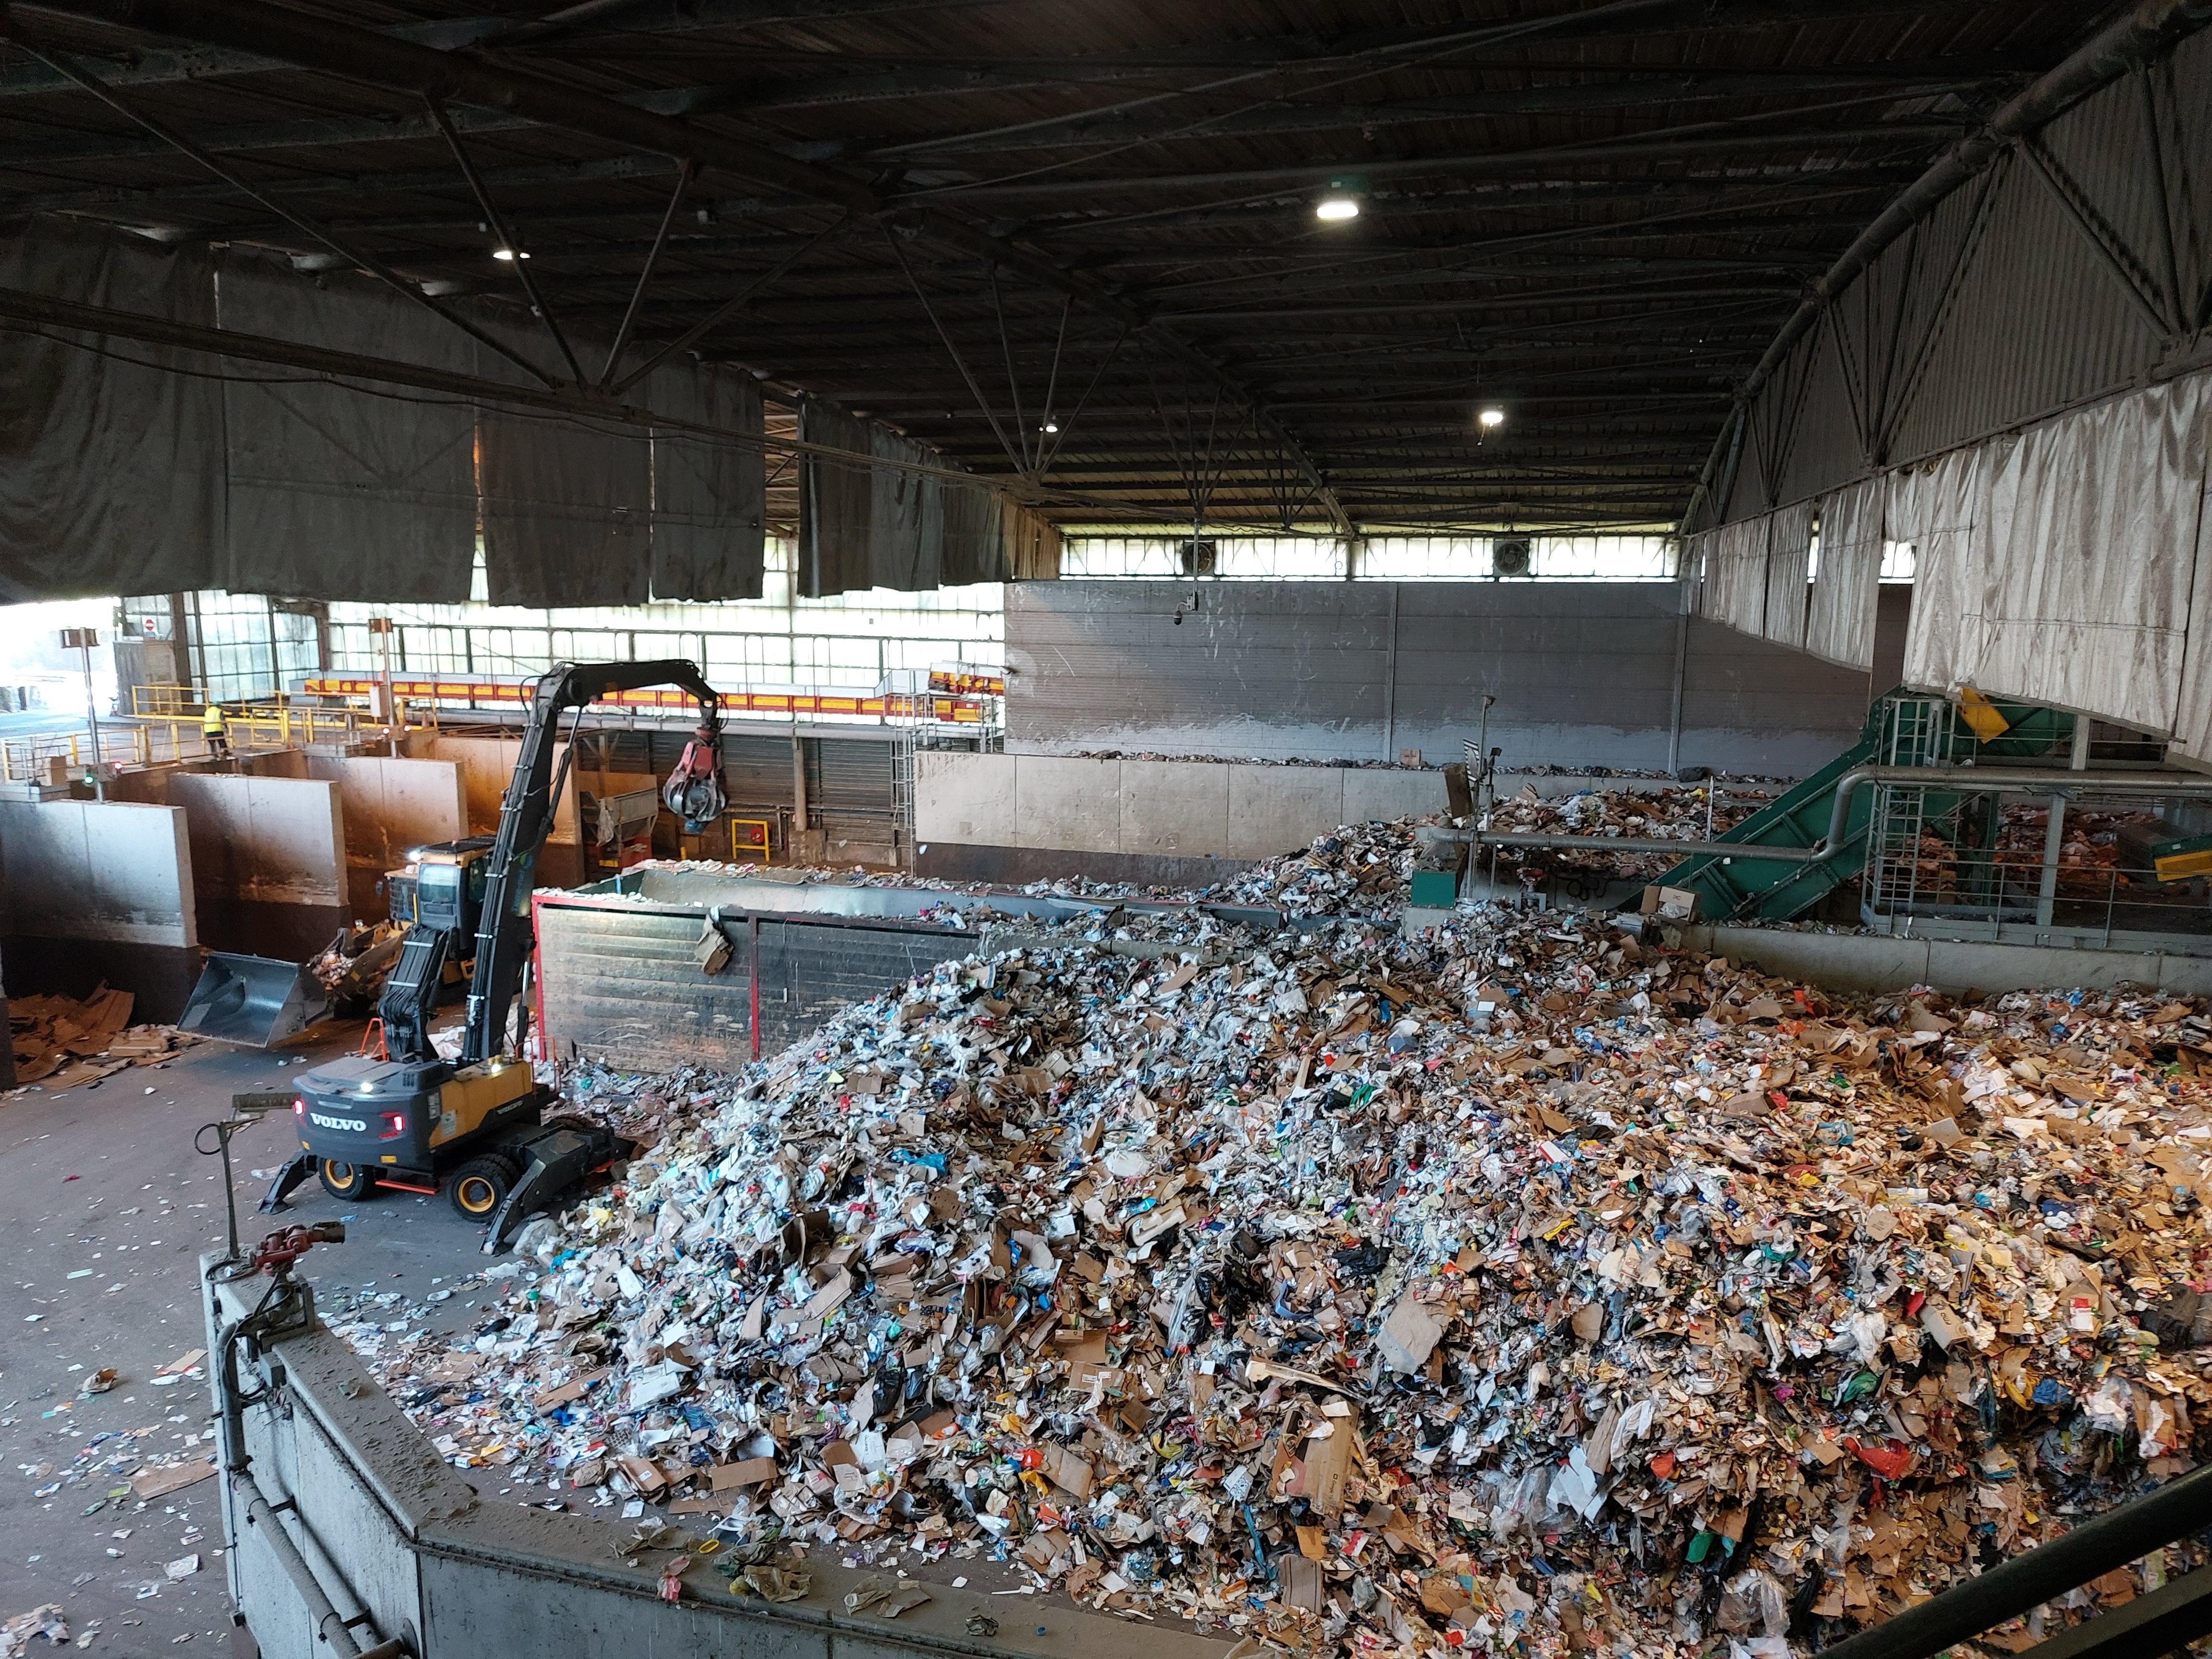 La réduction des déchets ⋅ Ville de Neuilly-sur-Seine